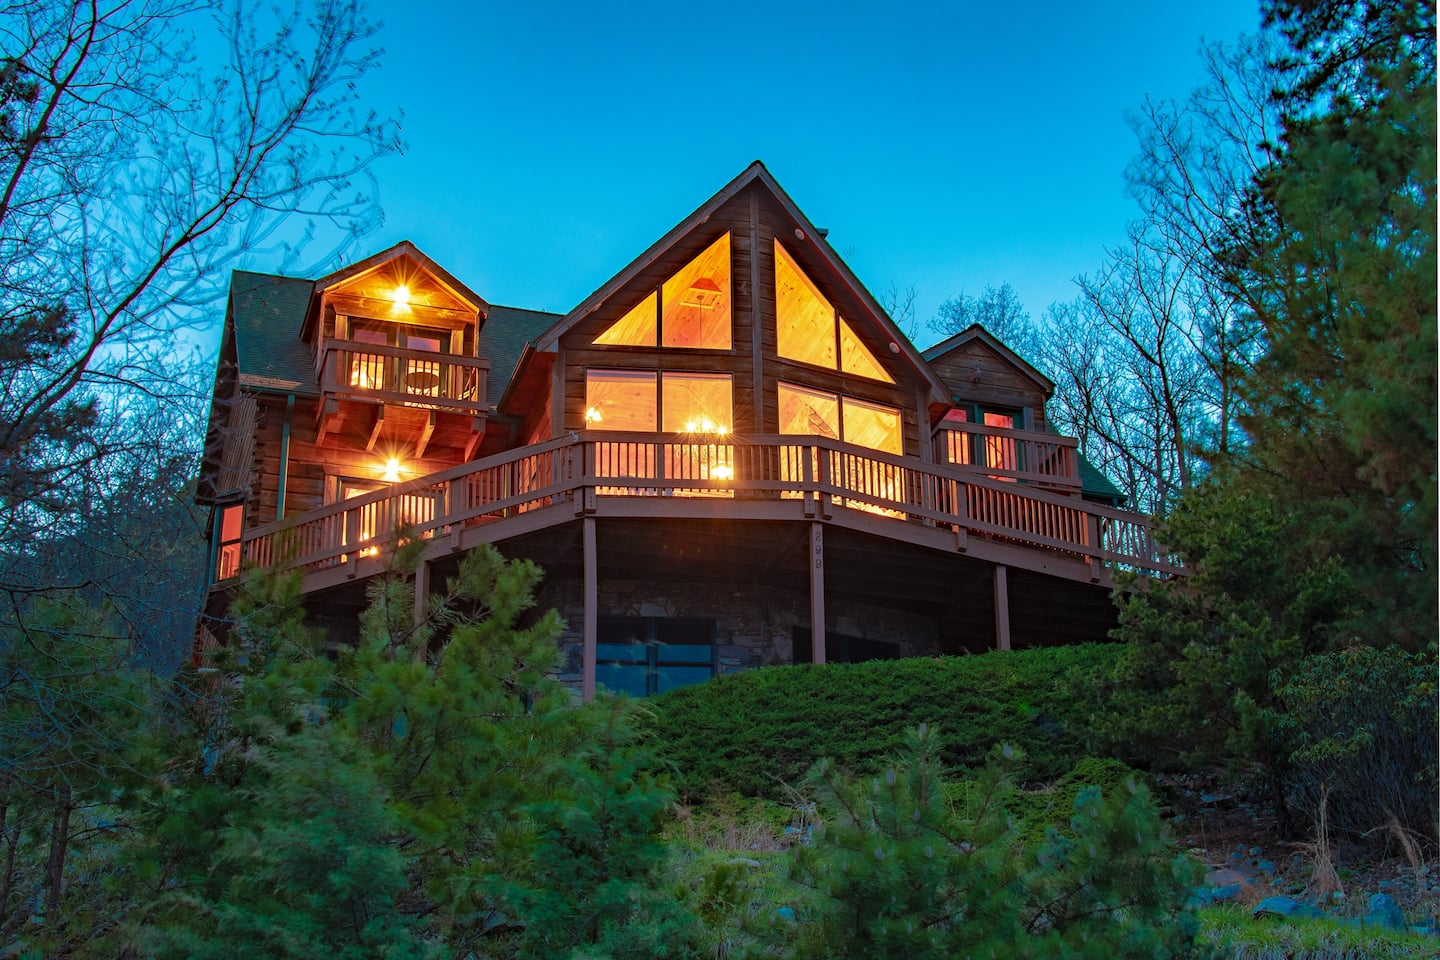 Shenandoah Peak Luxury Cabin Rental Virginia AirbnbShenandoah Peak Luxury Cabin Rental Virginia Airbnb